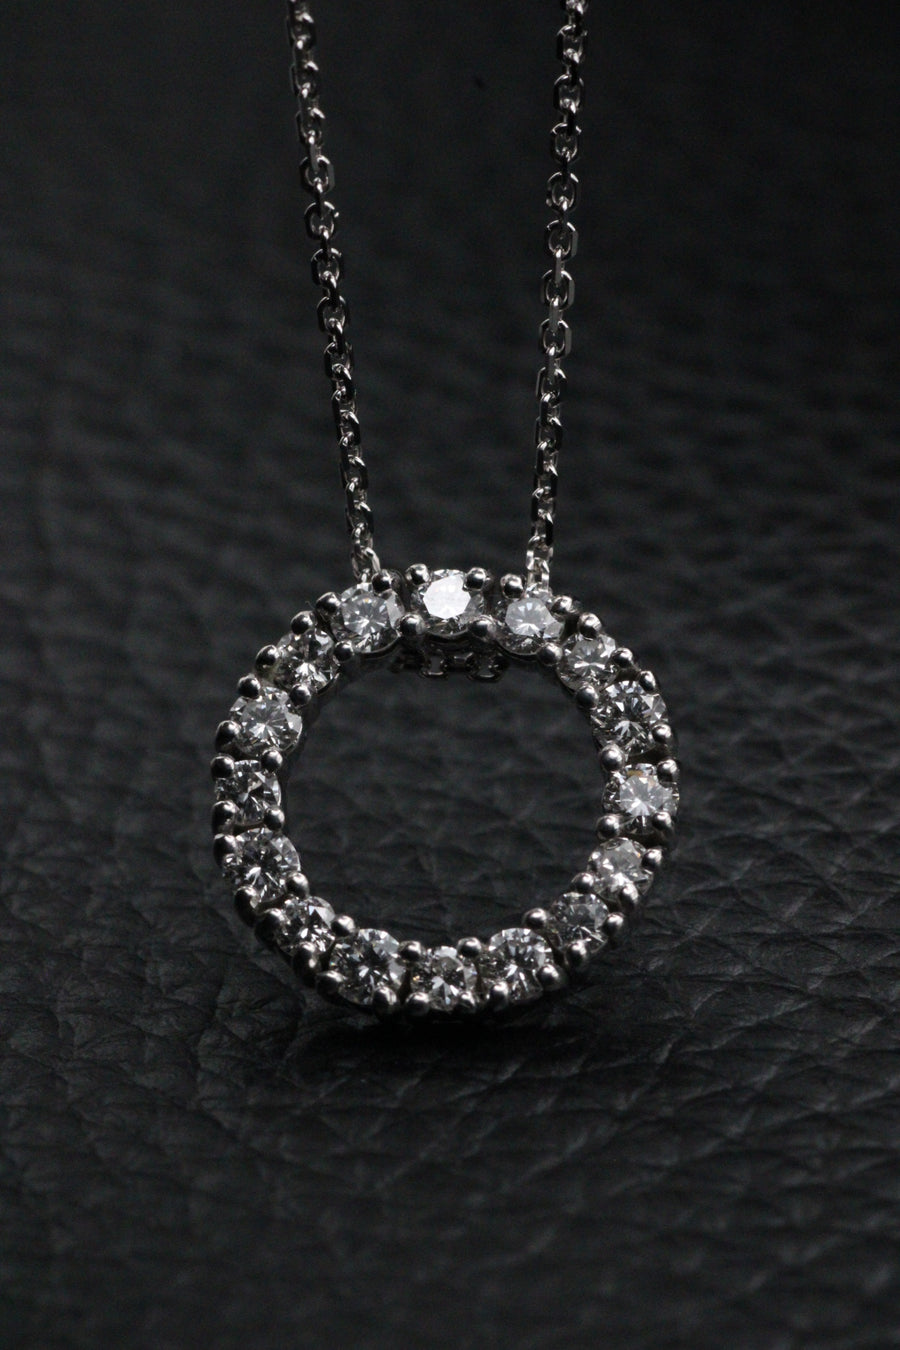 Round Diamond Halo Necklace